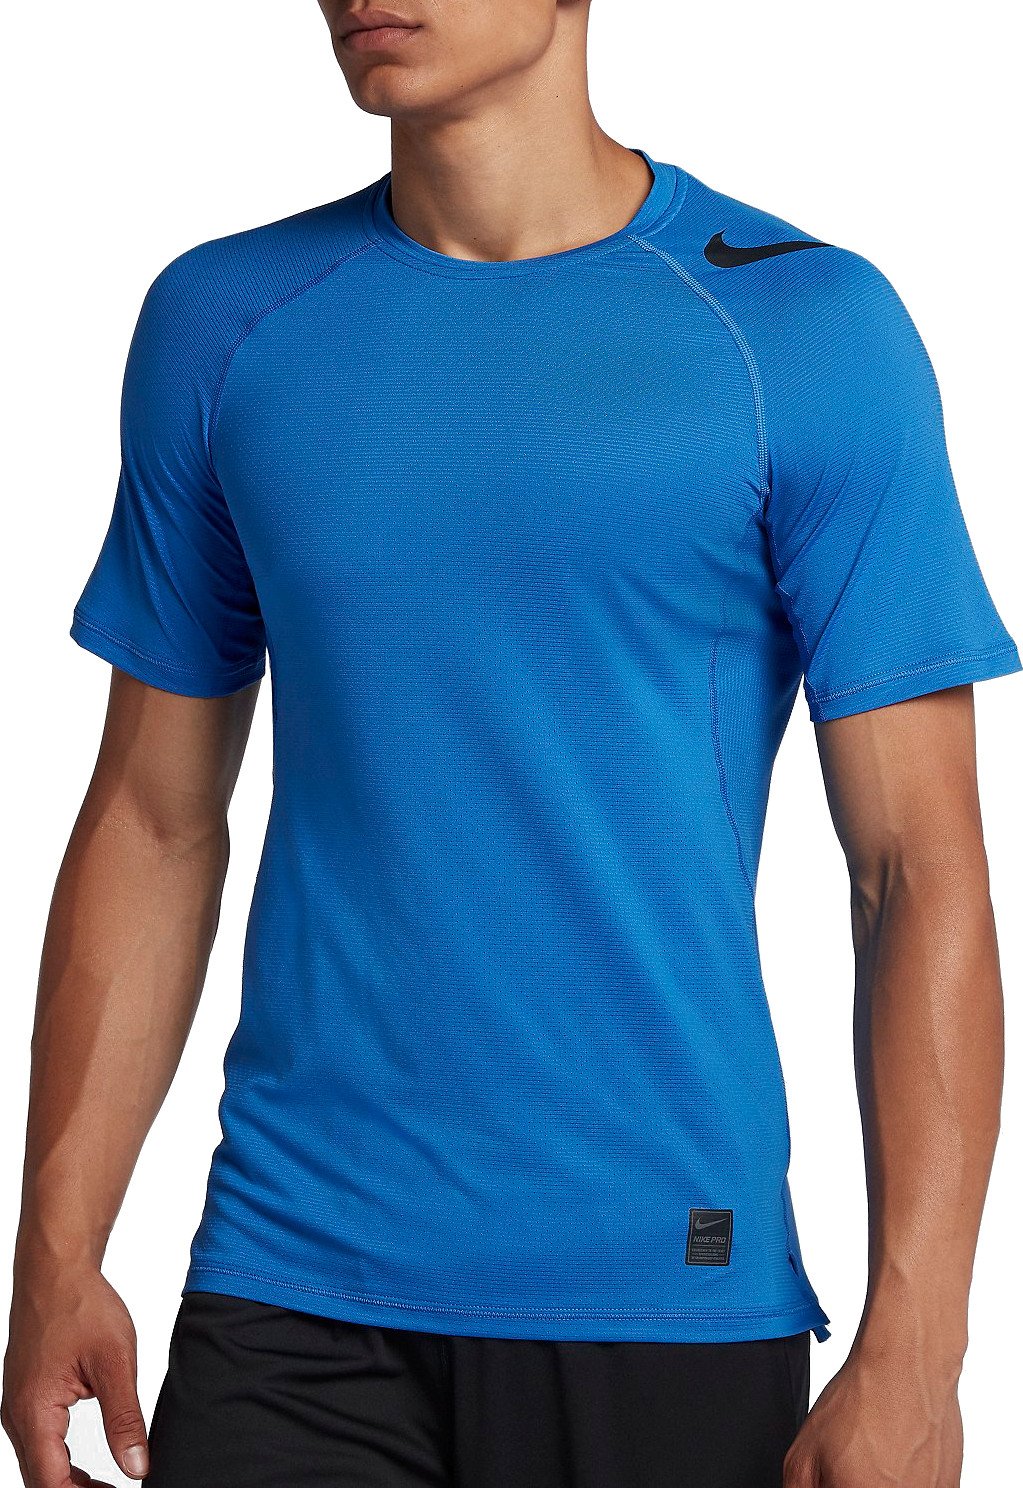 Pánské tričko s krátkým rukávem Nike Pro HyperCool GFX